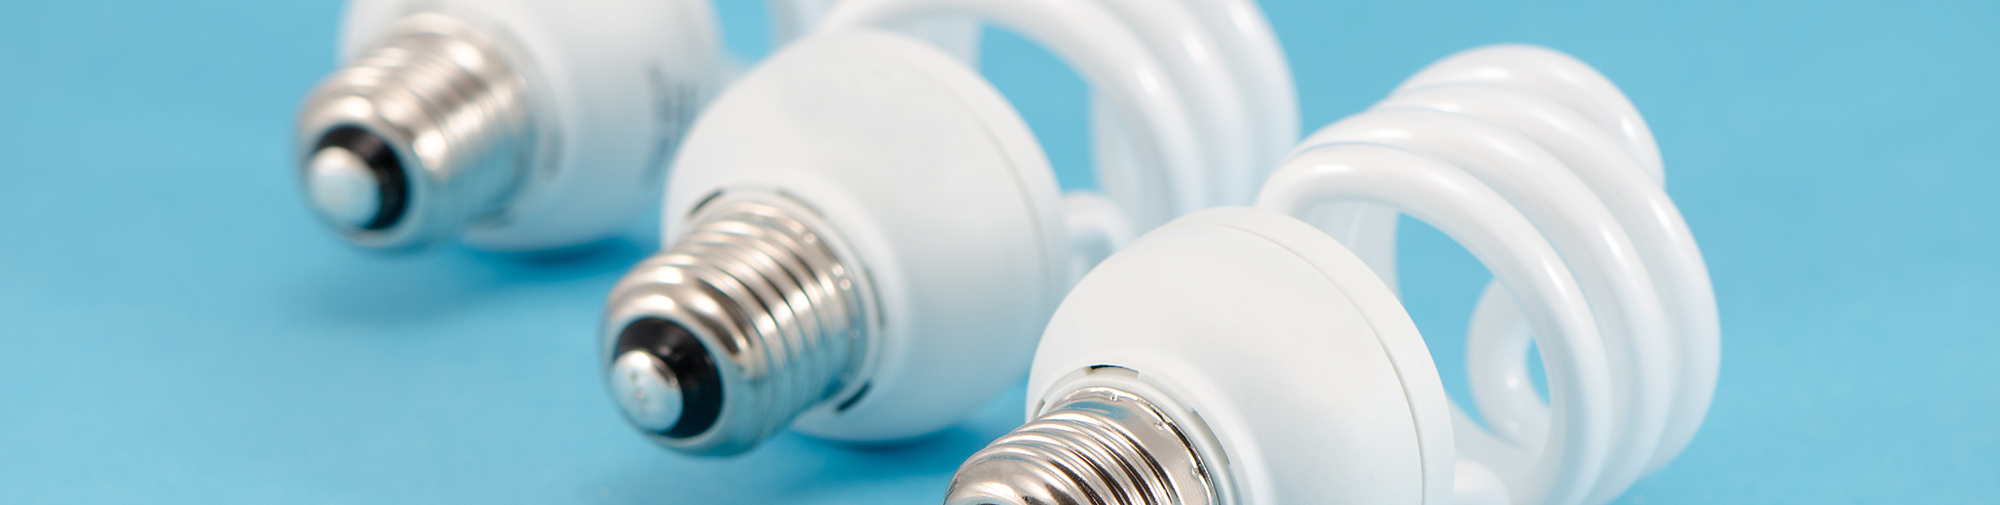 Ampoules LED et basse consommation : pourquoi les choisir ?